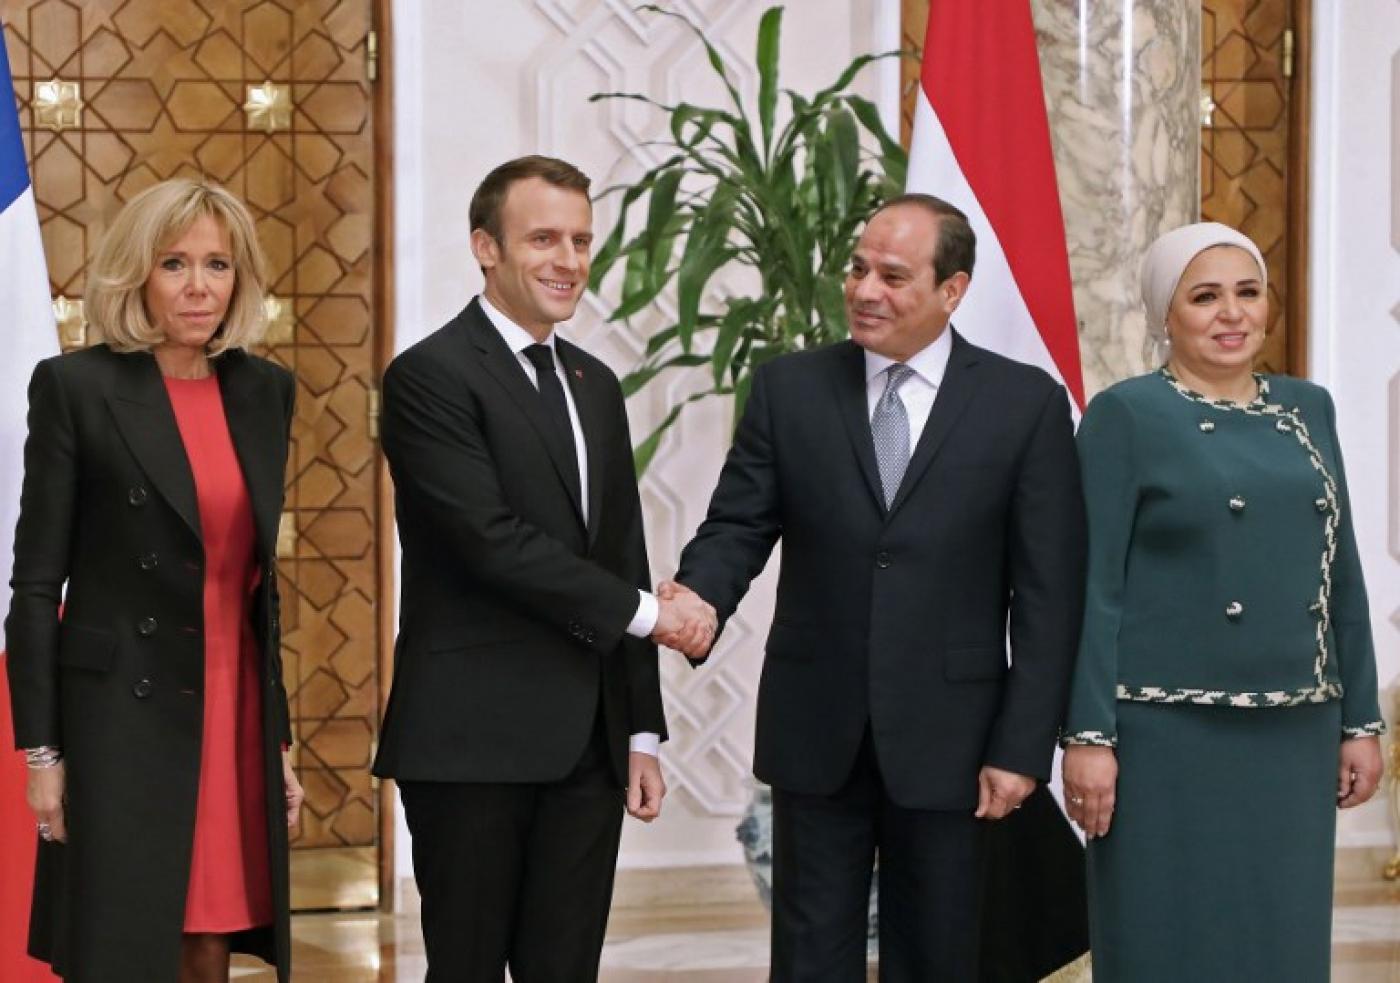 Le président français Emmanuel Macron et son homologue égyptien Abdel Fattah al-Sissi, accompagnés de leurs épouses Brigitte Macron (à gauche) et Intissar Amer (à droite), dans le palais présidentiel égyptien, au Caire le 28 janvier 2019 (AFP)